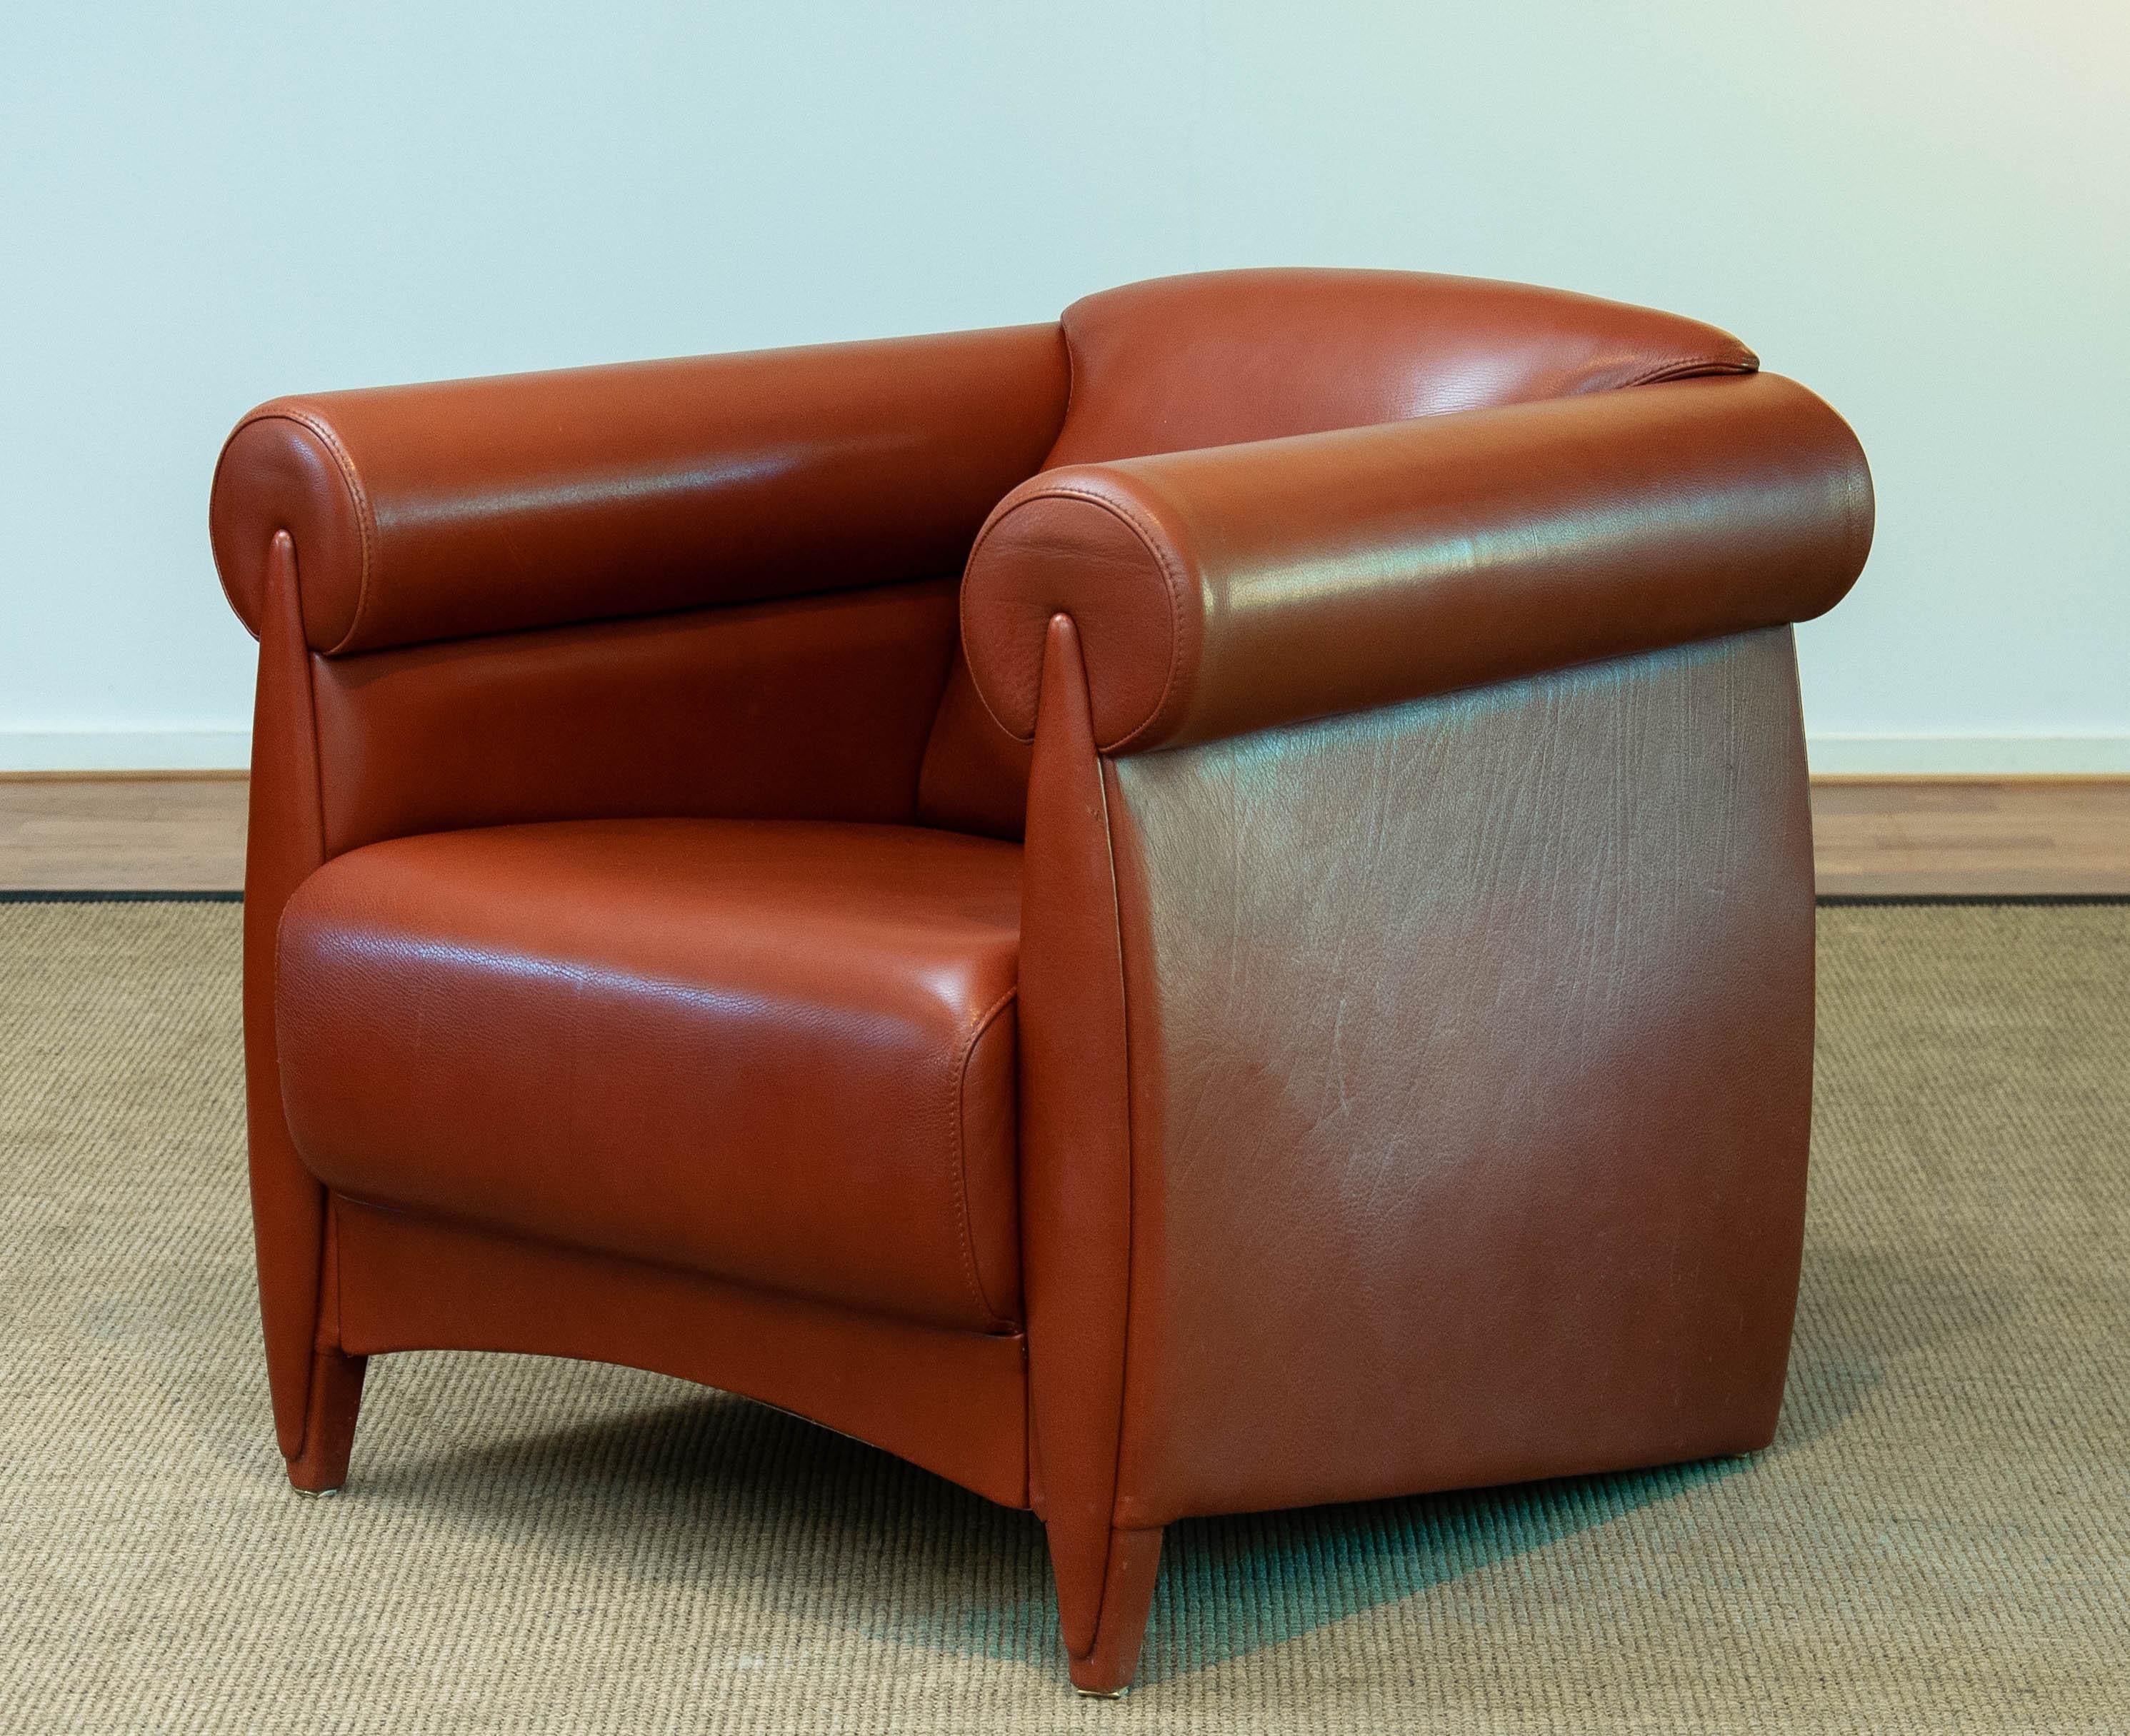 Chaises longues / chaises club très exclusives et rares du designer danois Klaus Wettergren en quantité limitée et uniquement sur demande spéciale construites par commandes sélectives.
Cette chaise est fabriquée selon des normes très strictes et